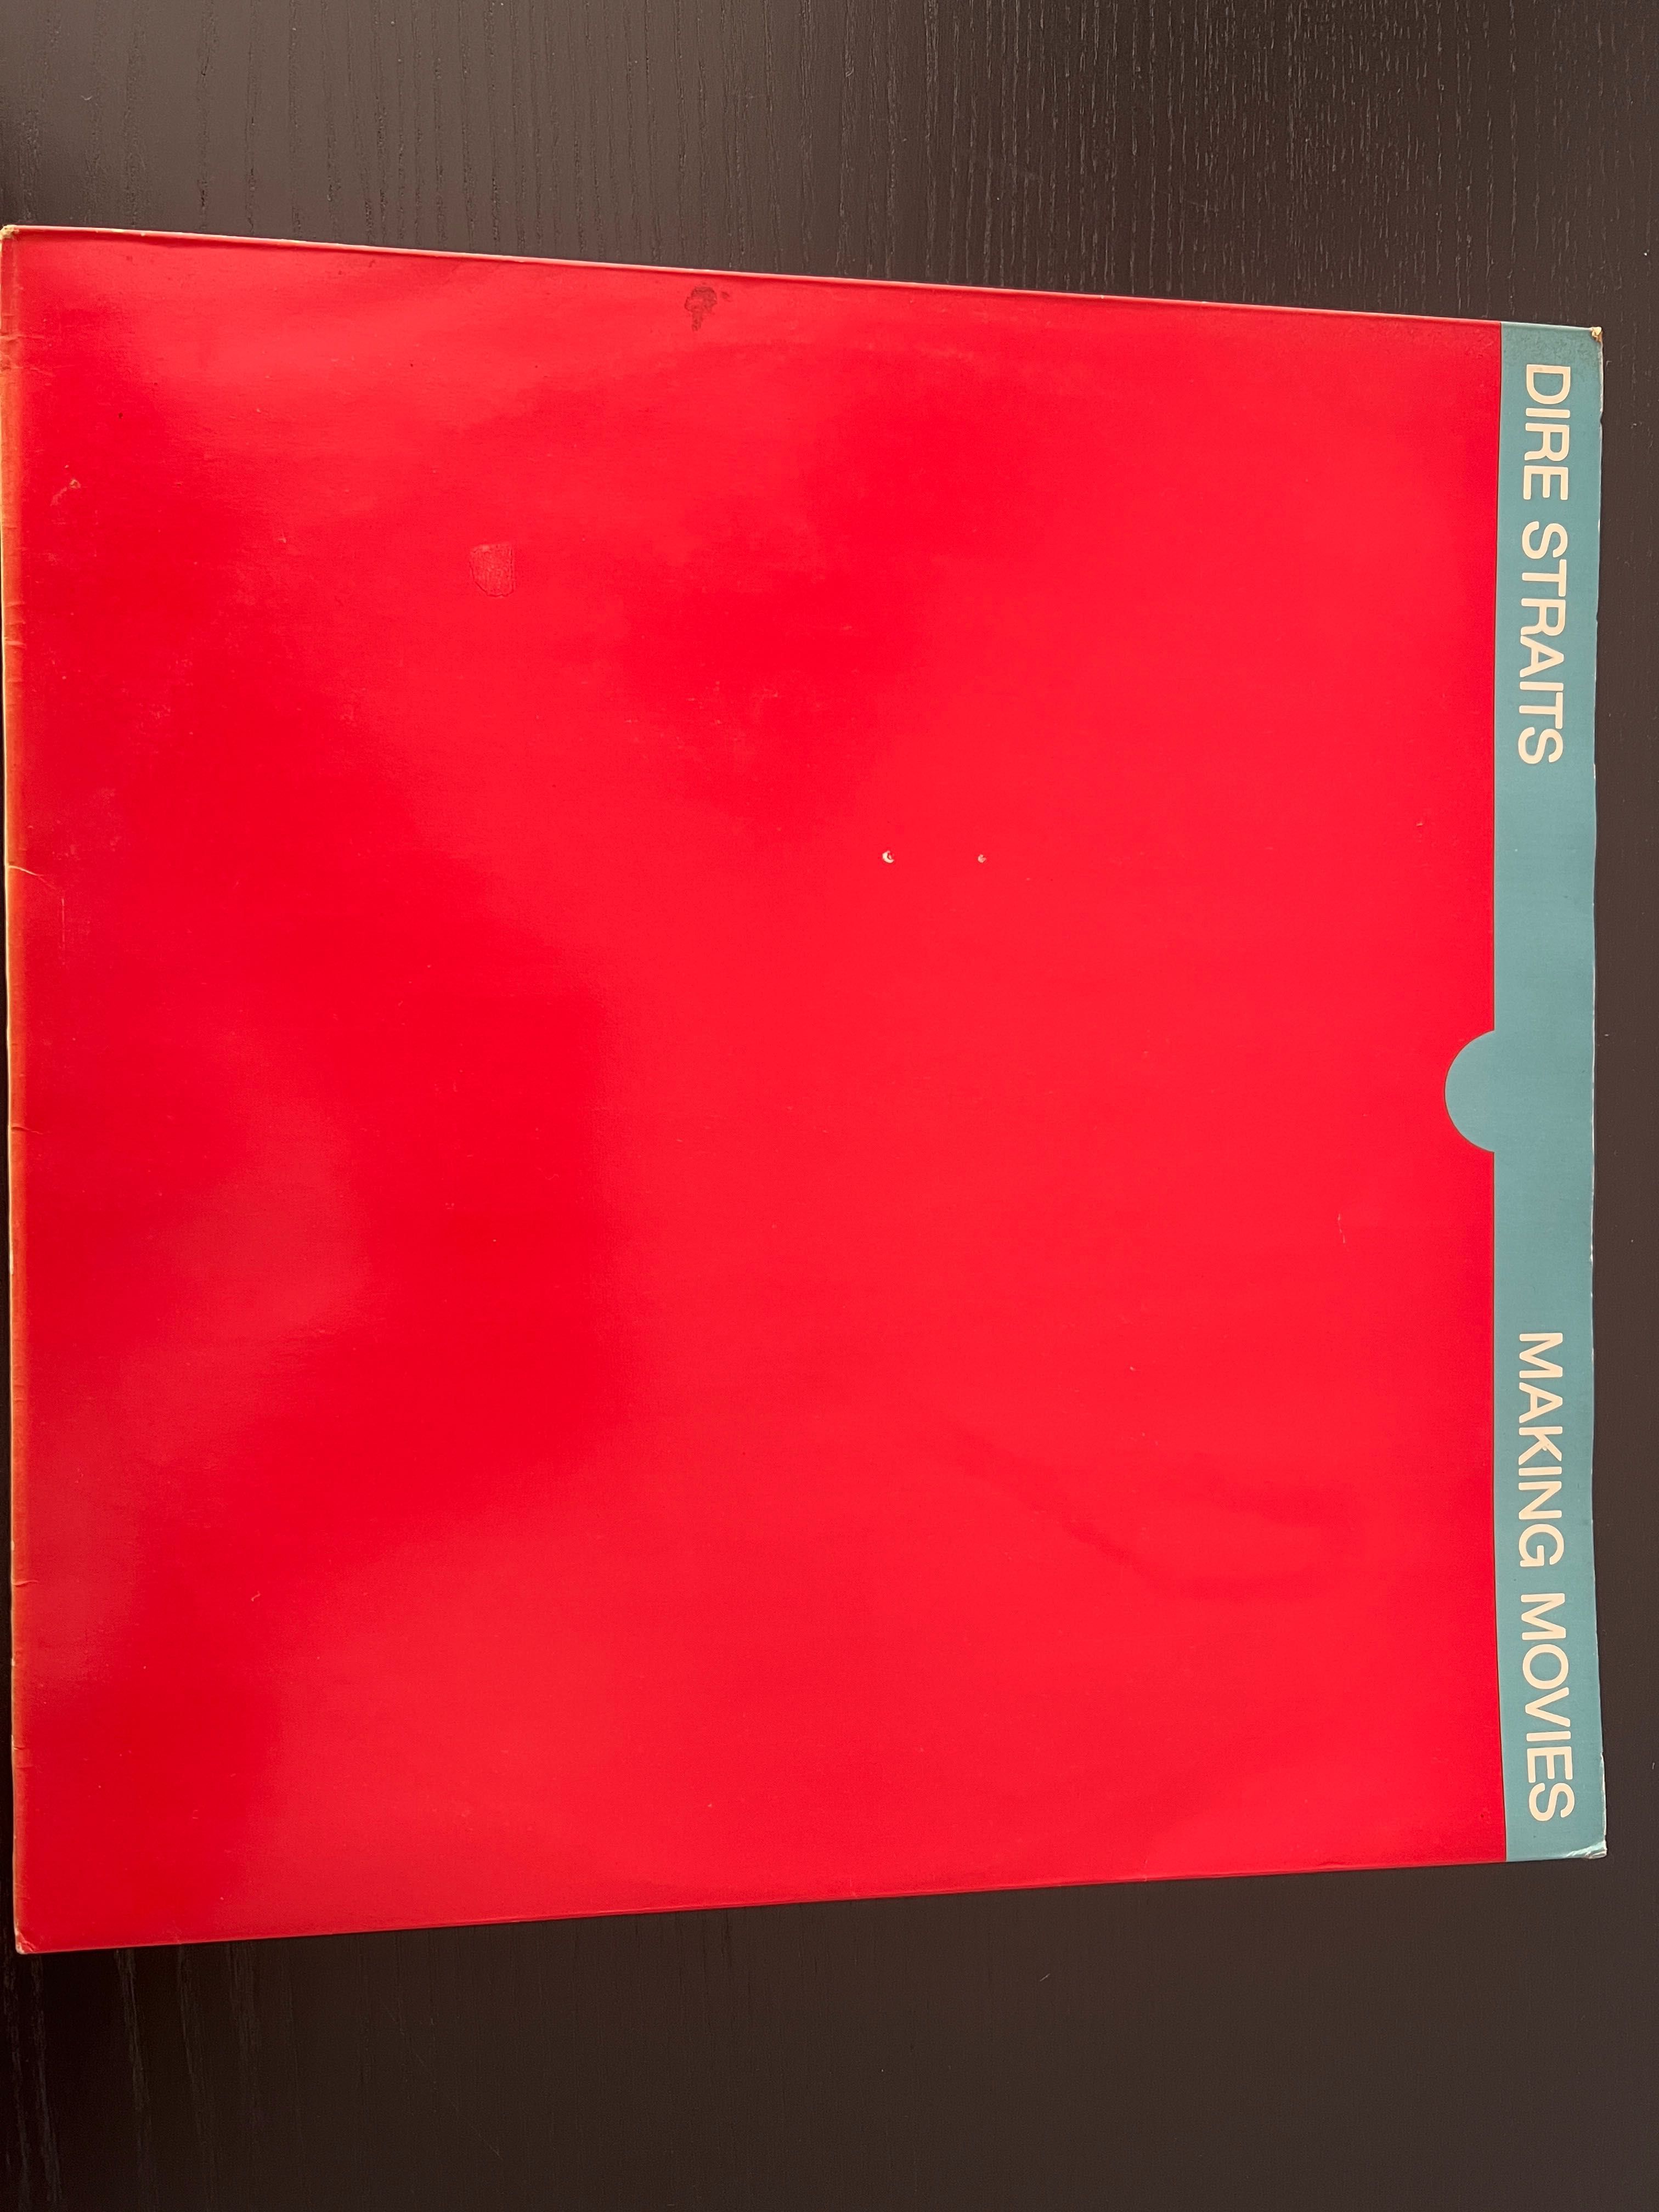 Vinil Dire Straits - Making Movies, edição de 1980, excelente estado